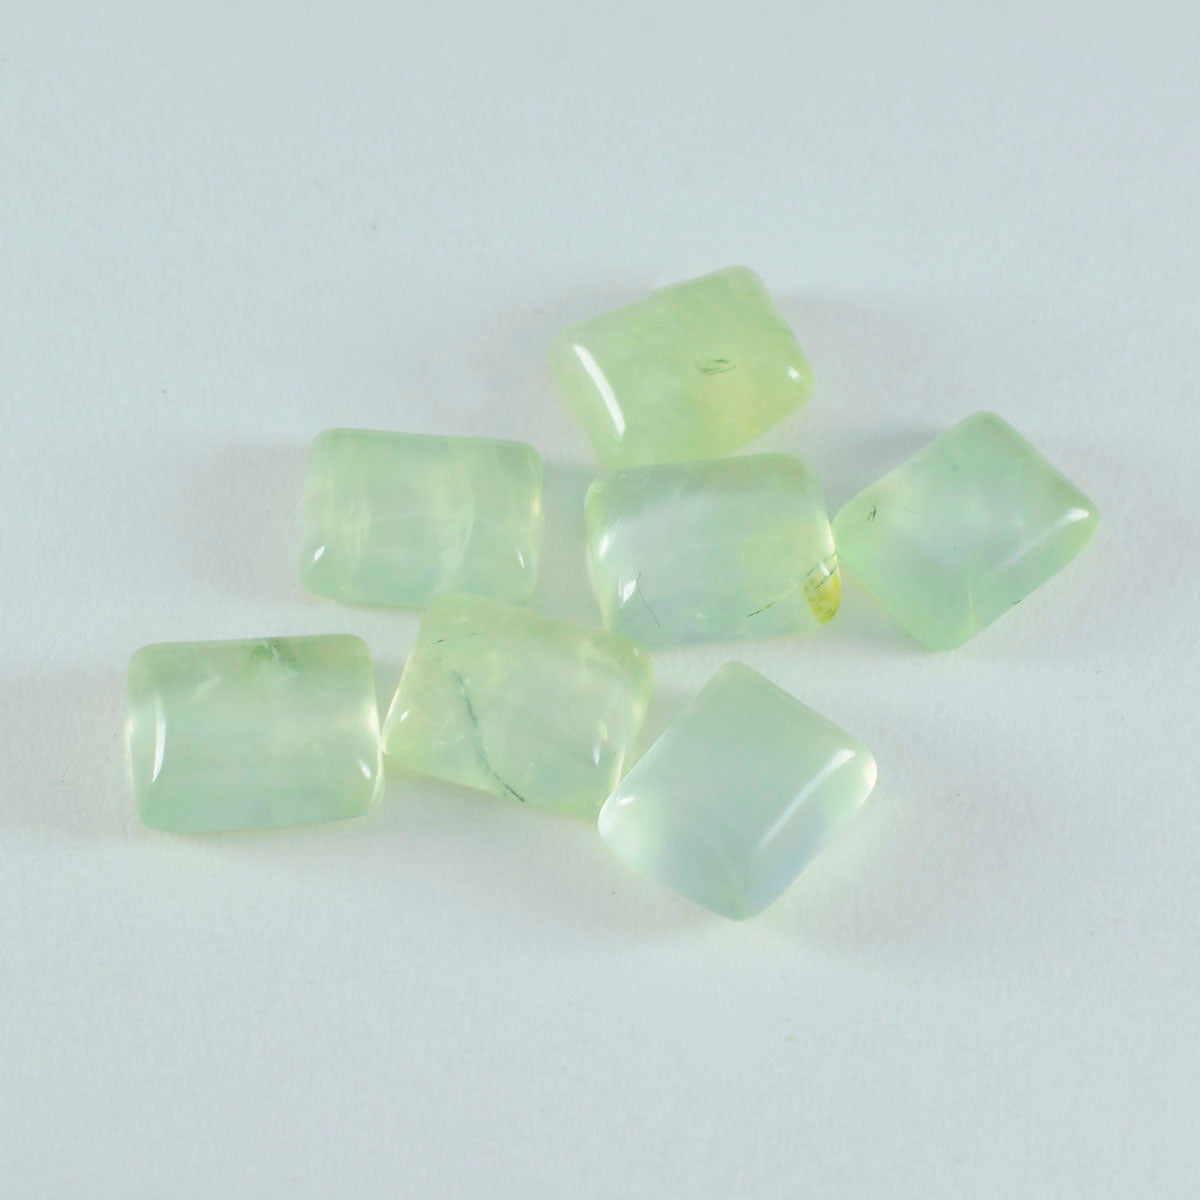 riyogems 1 шт. зеленый пренит кабошон 10x14 мм восьмиугольной формы хорошее качество свободный драгоценный камень